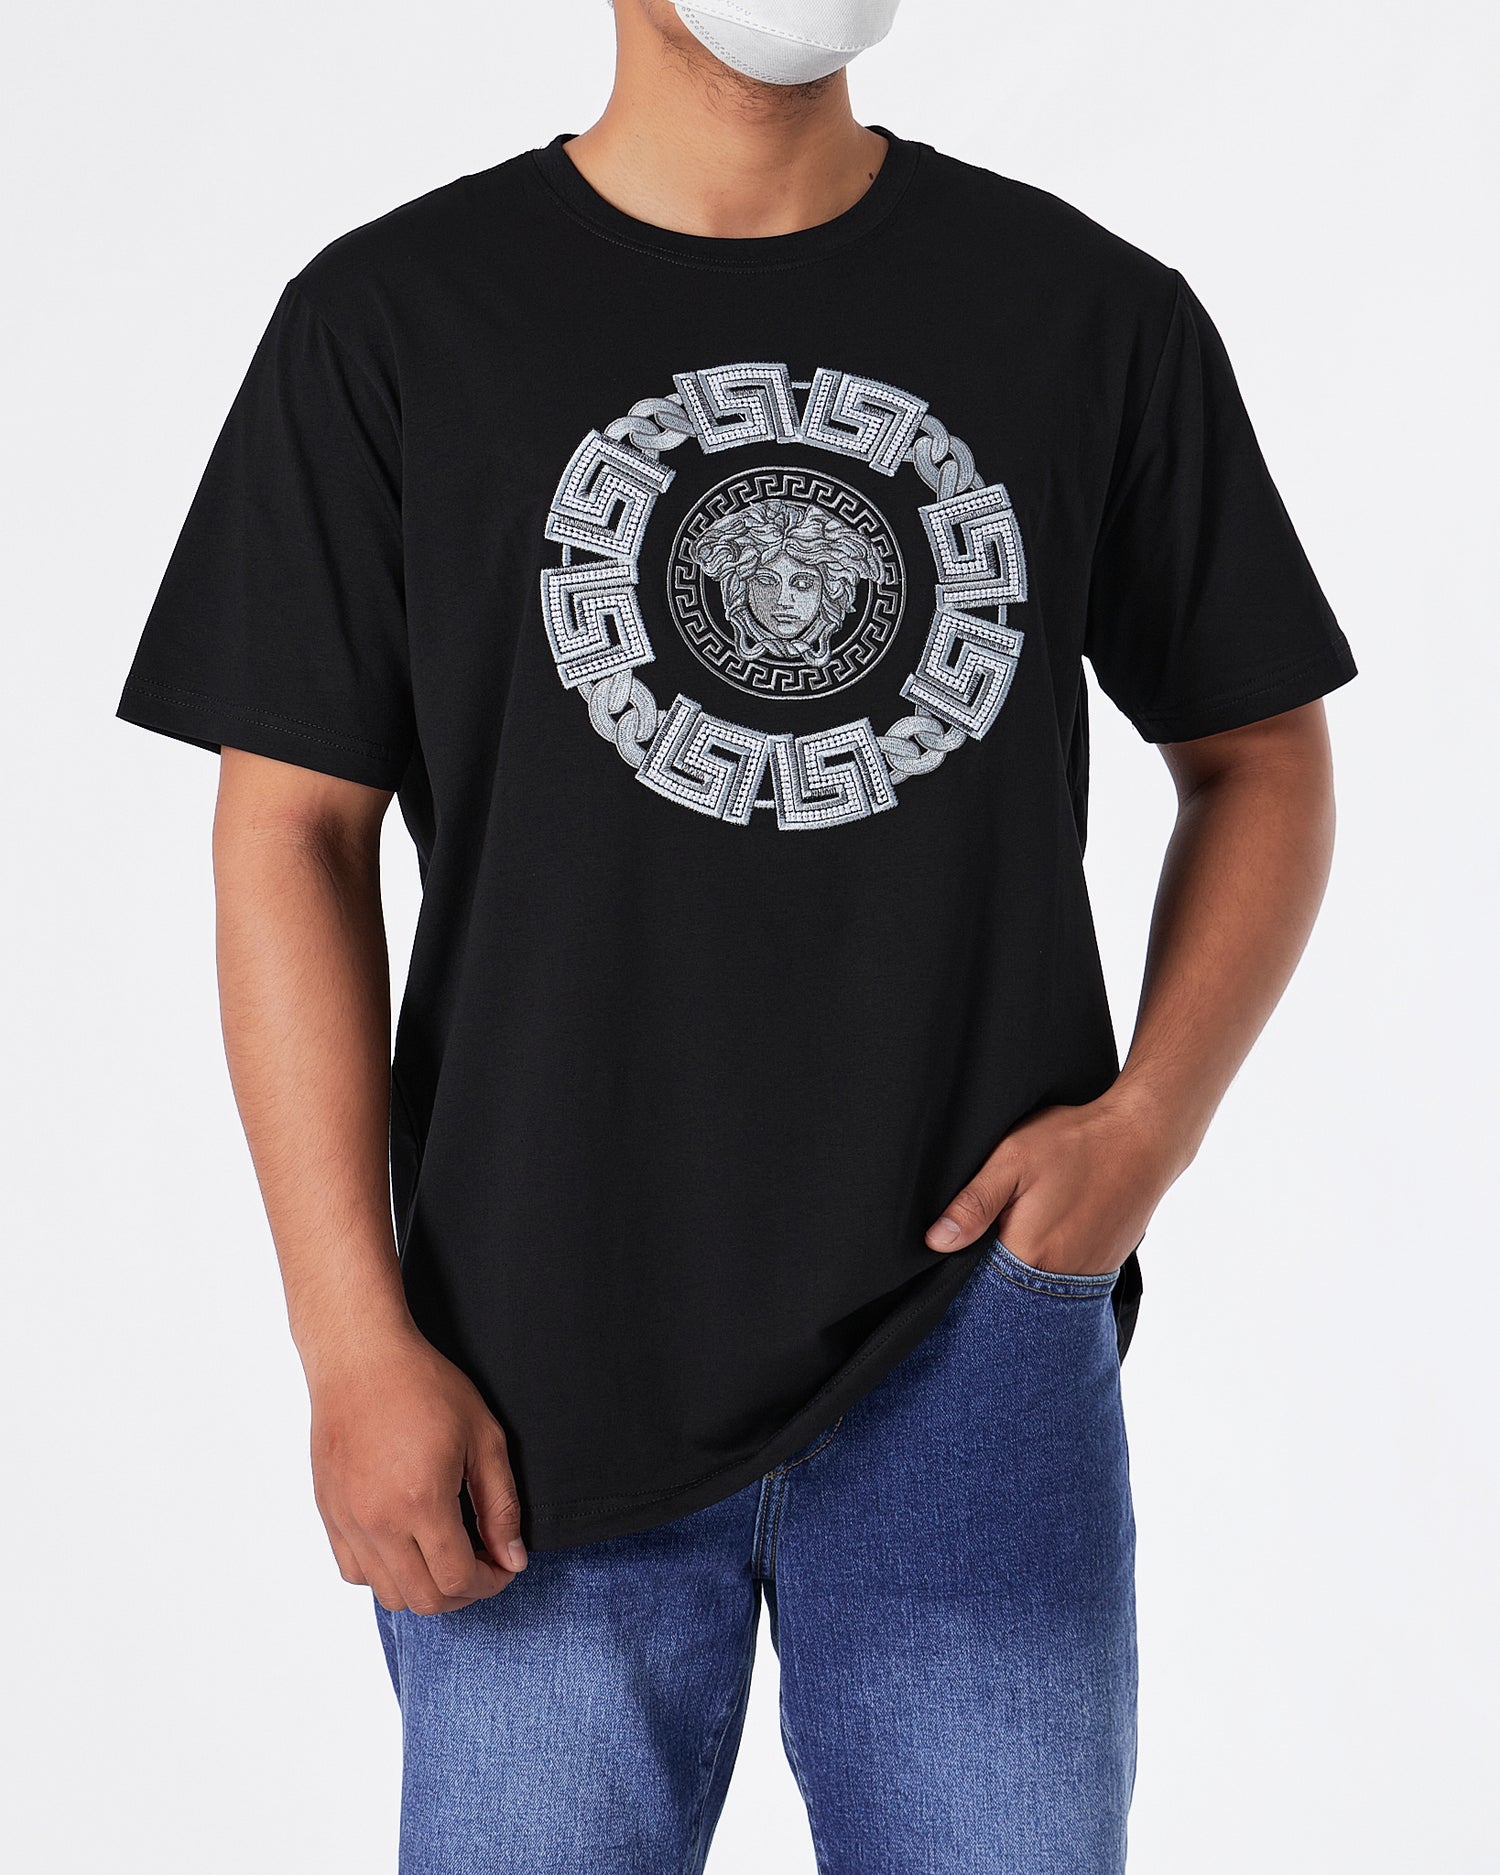 VER Medusa Silver Embroidered Men Black T-Shirt 24.90